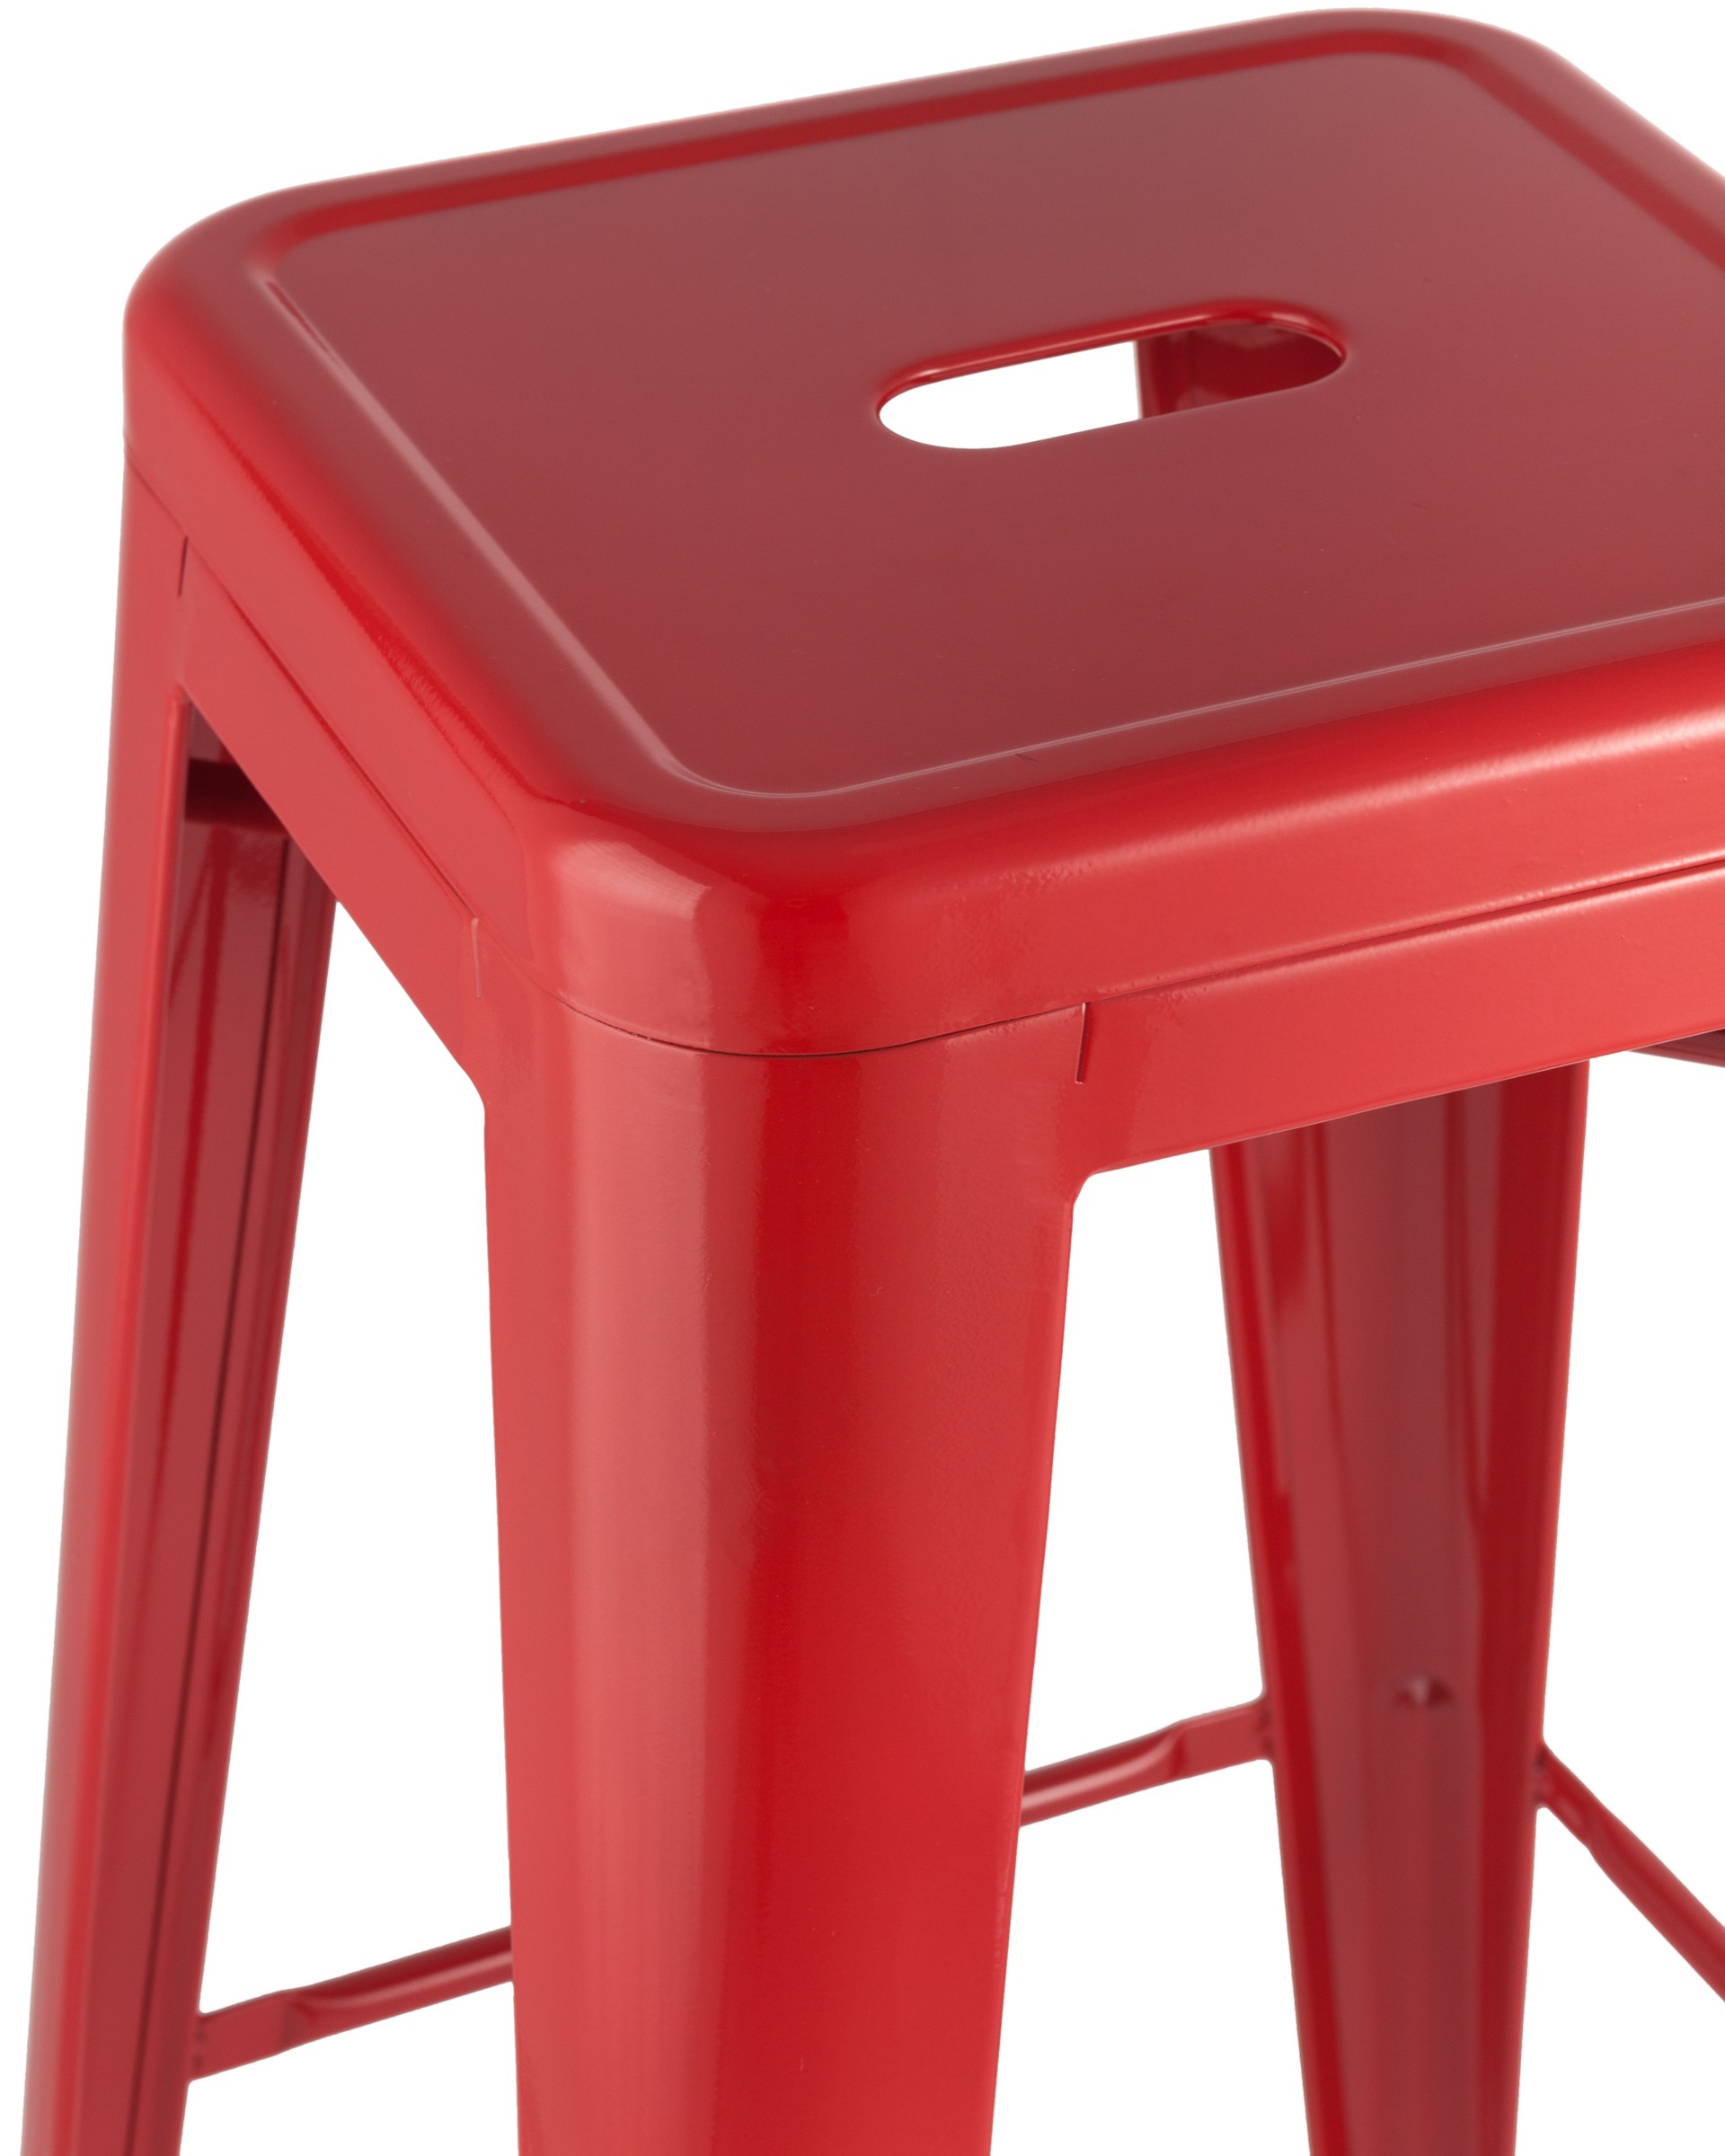 Стул барный Tolix красный глянцевый, широкое удобное сиденье, металлические ножки